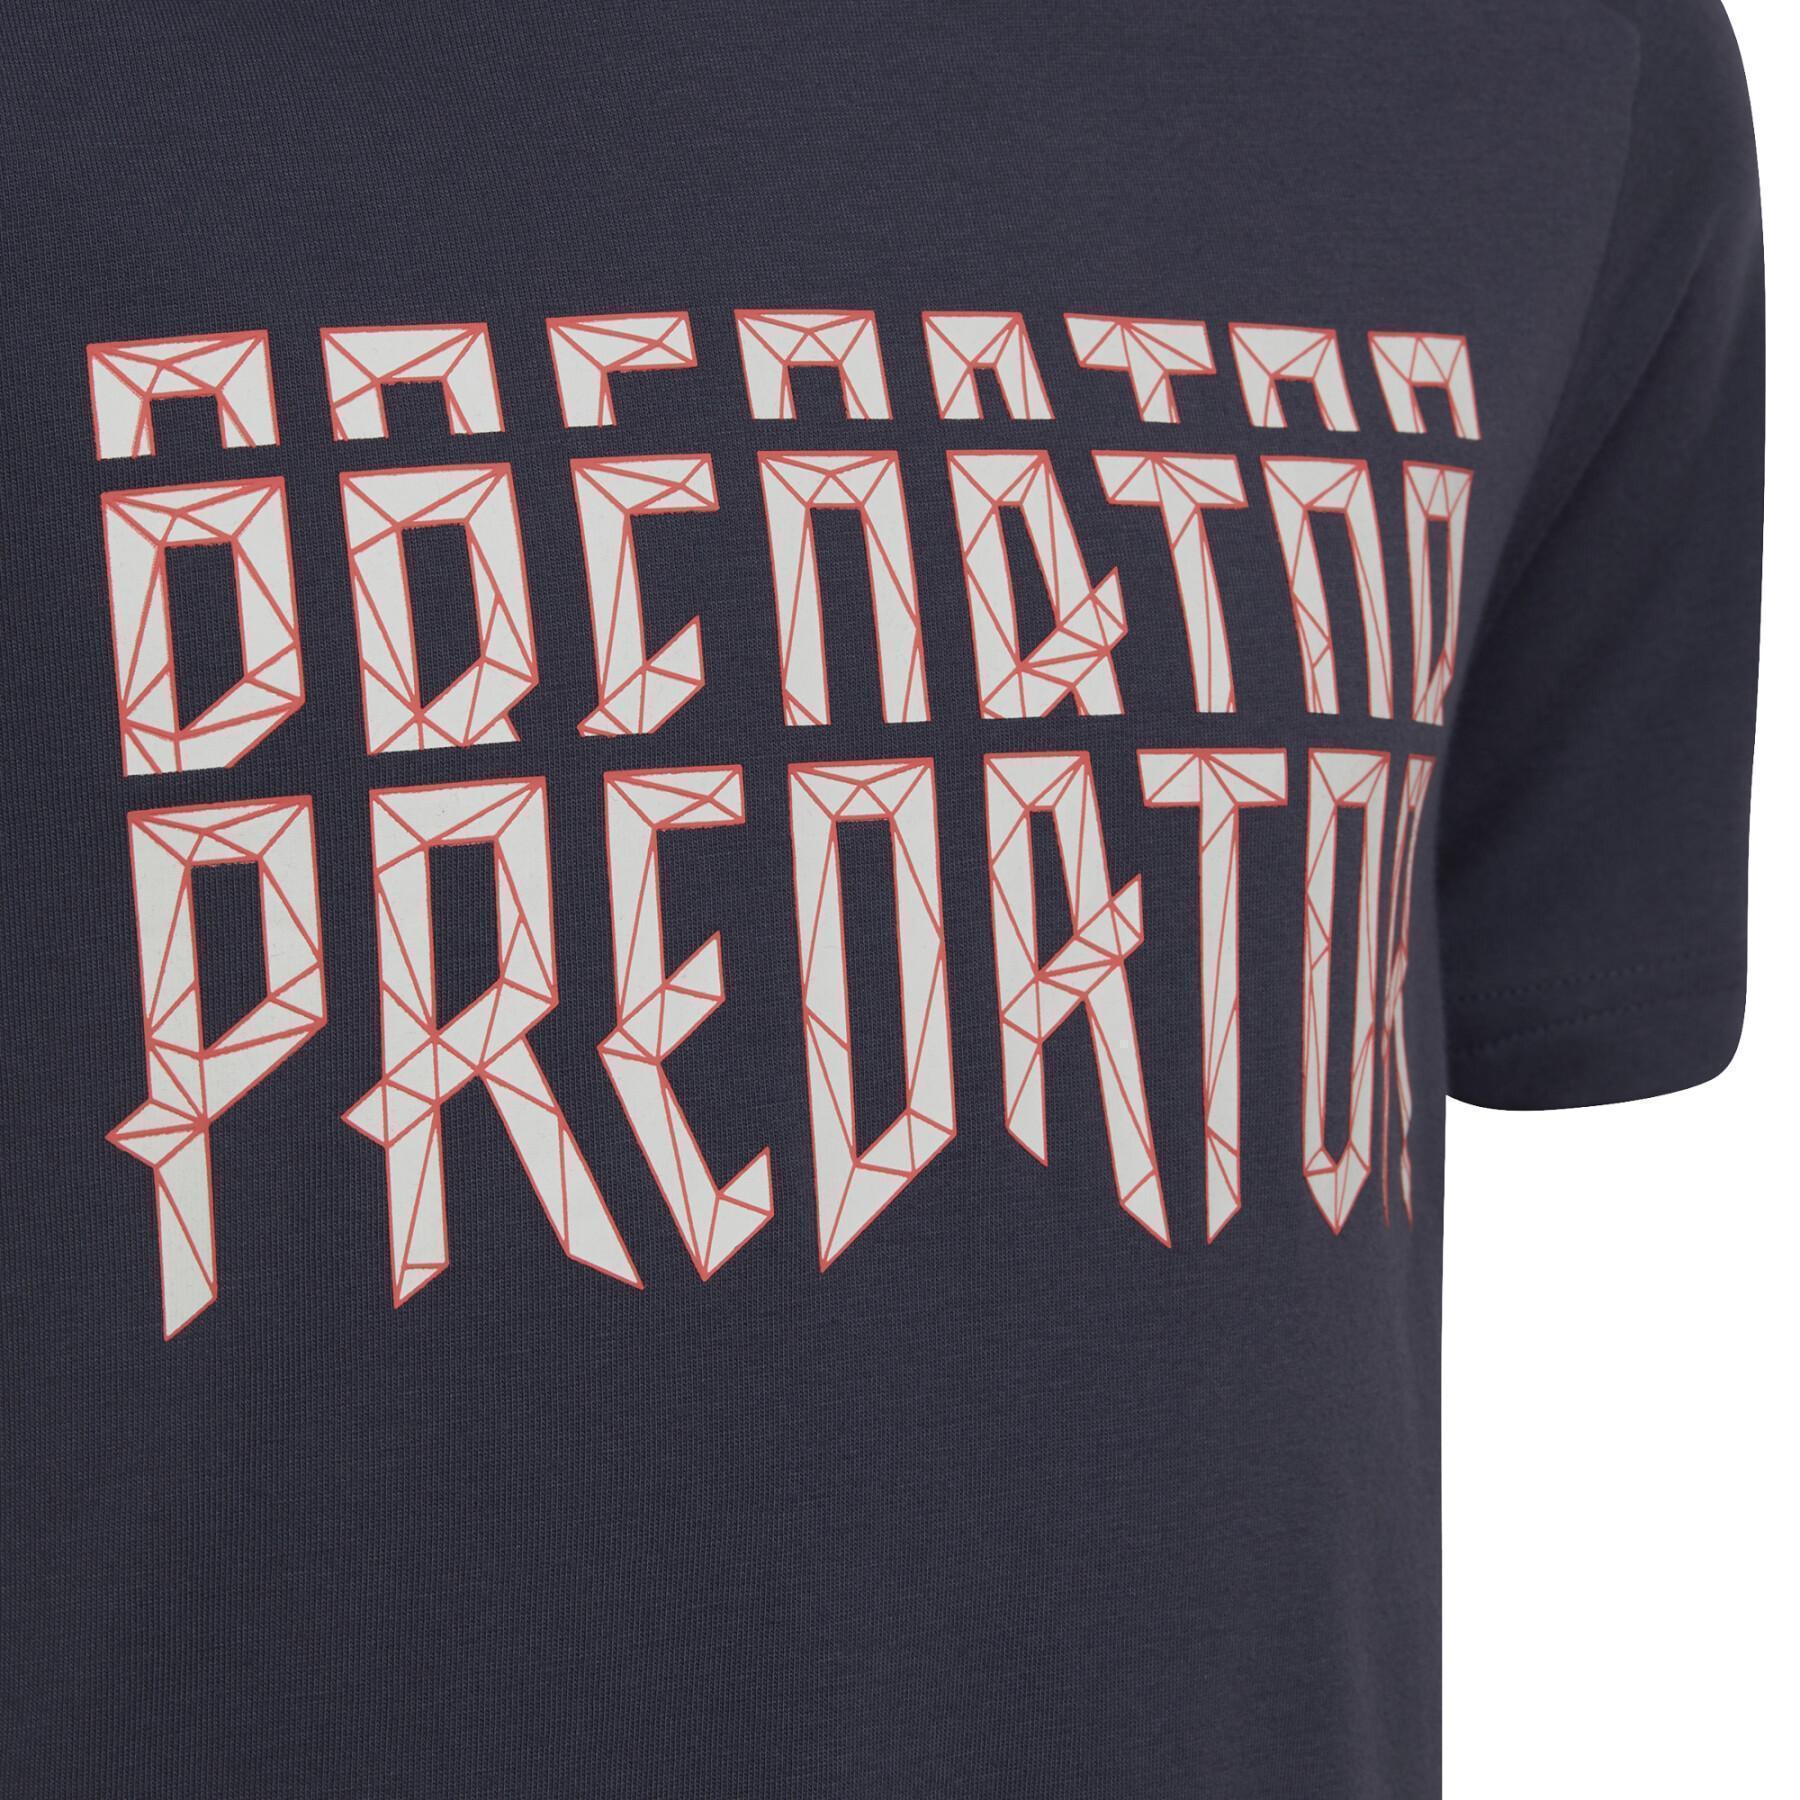 T-shirt enfant adidas Predator